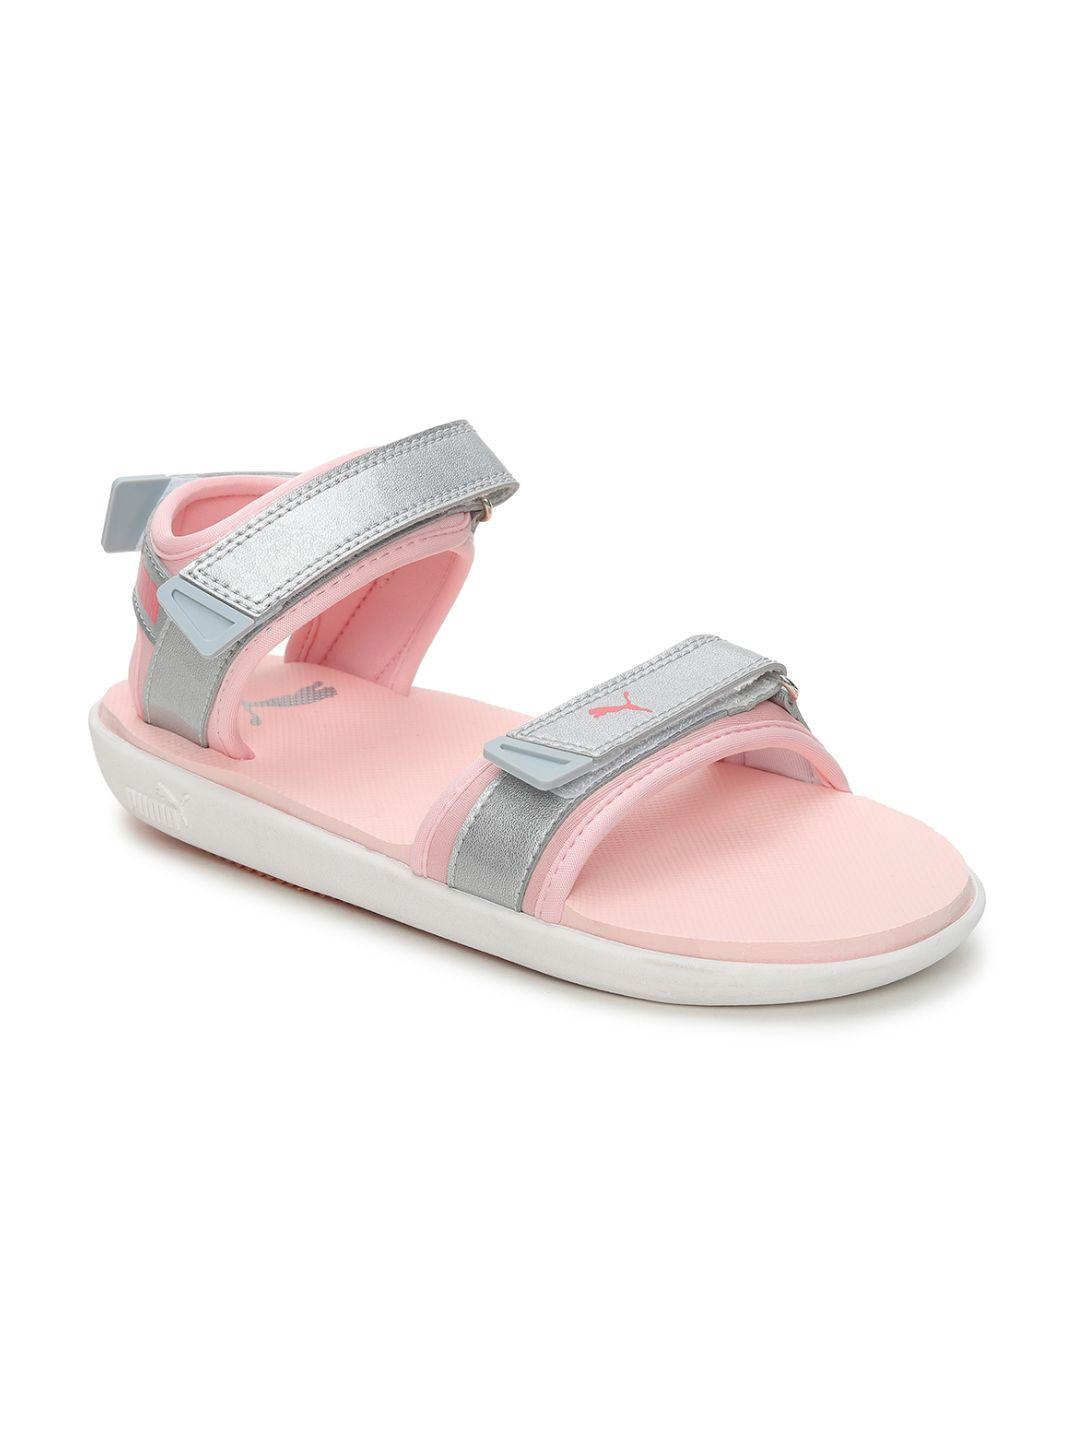 puma women pink sports sandals